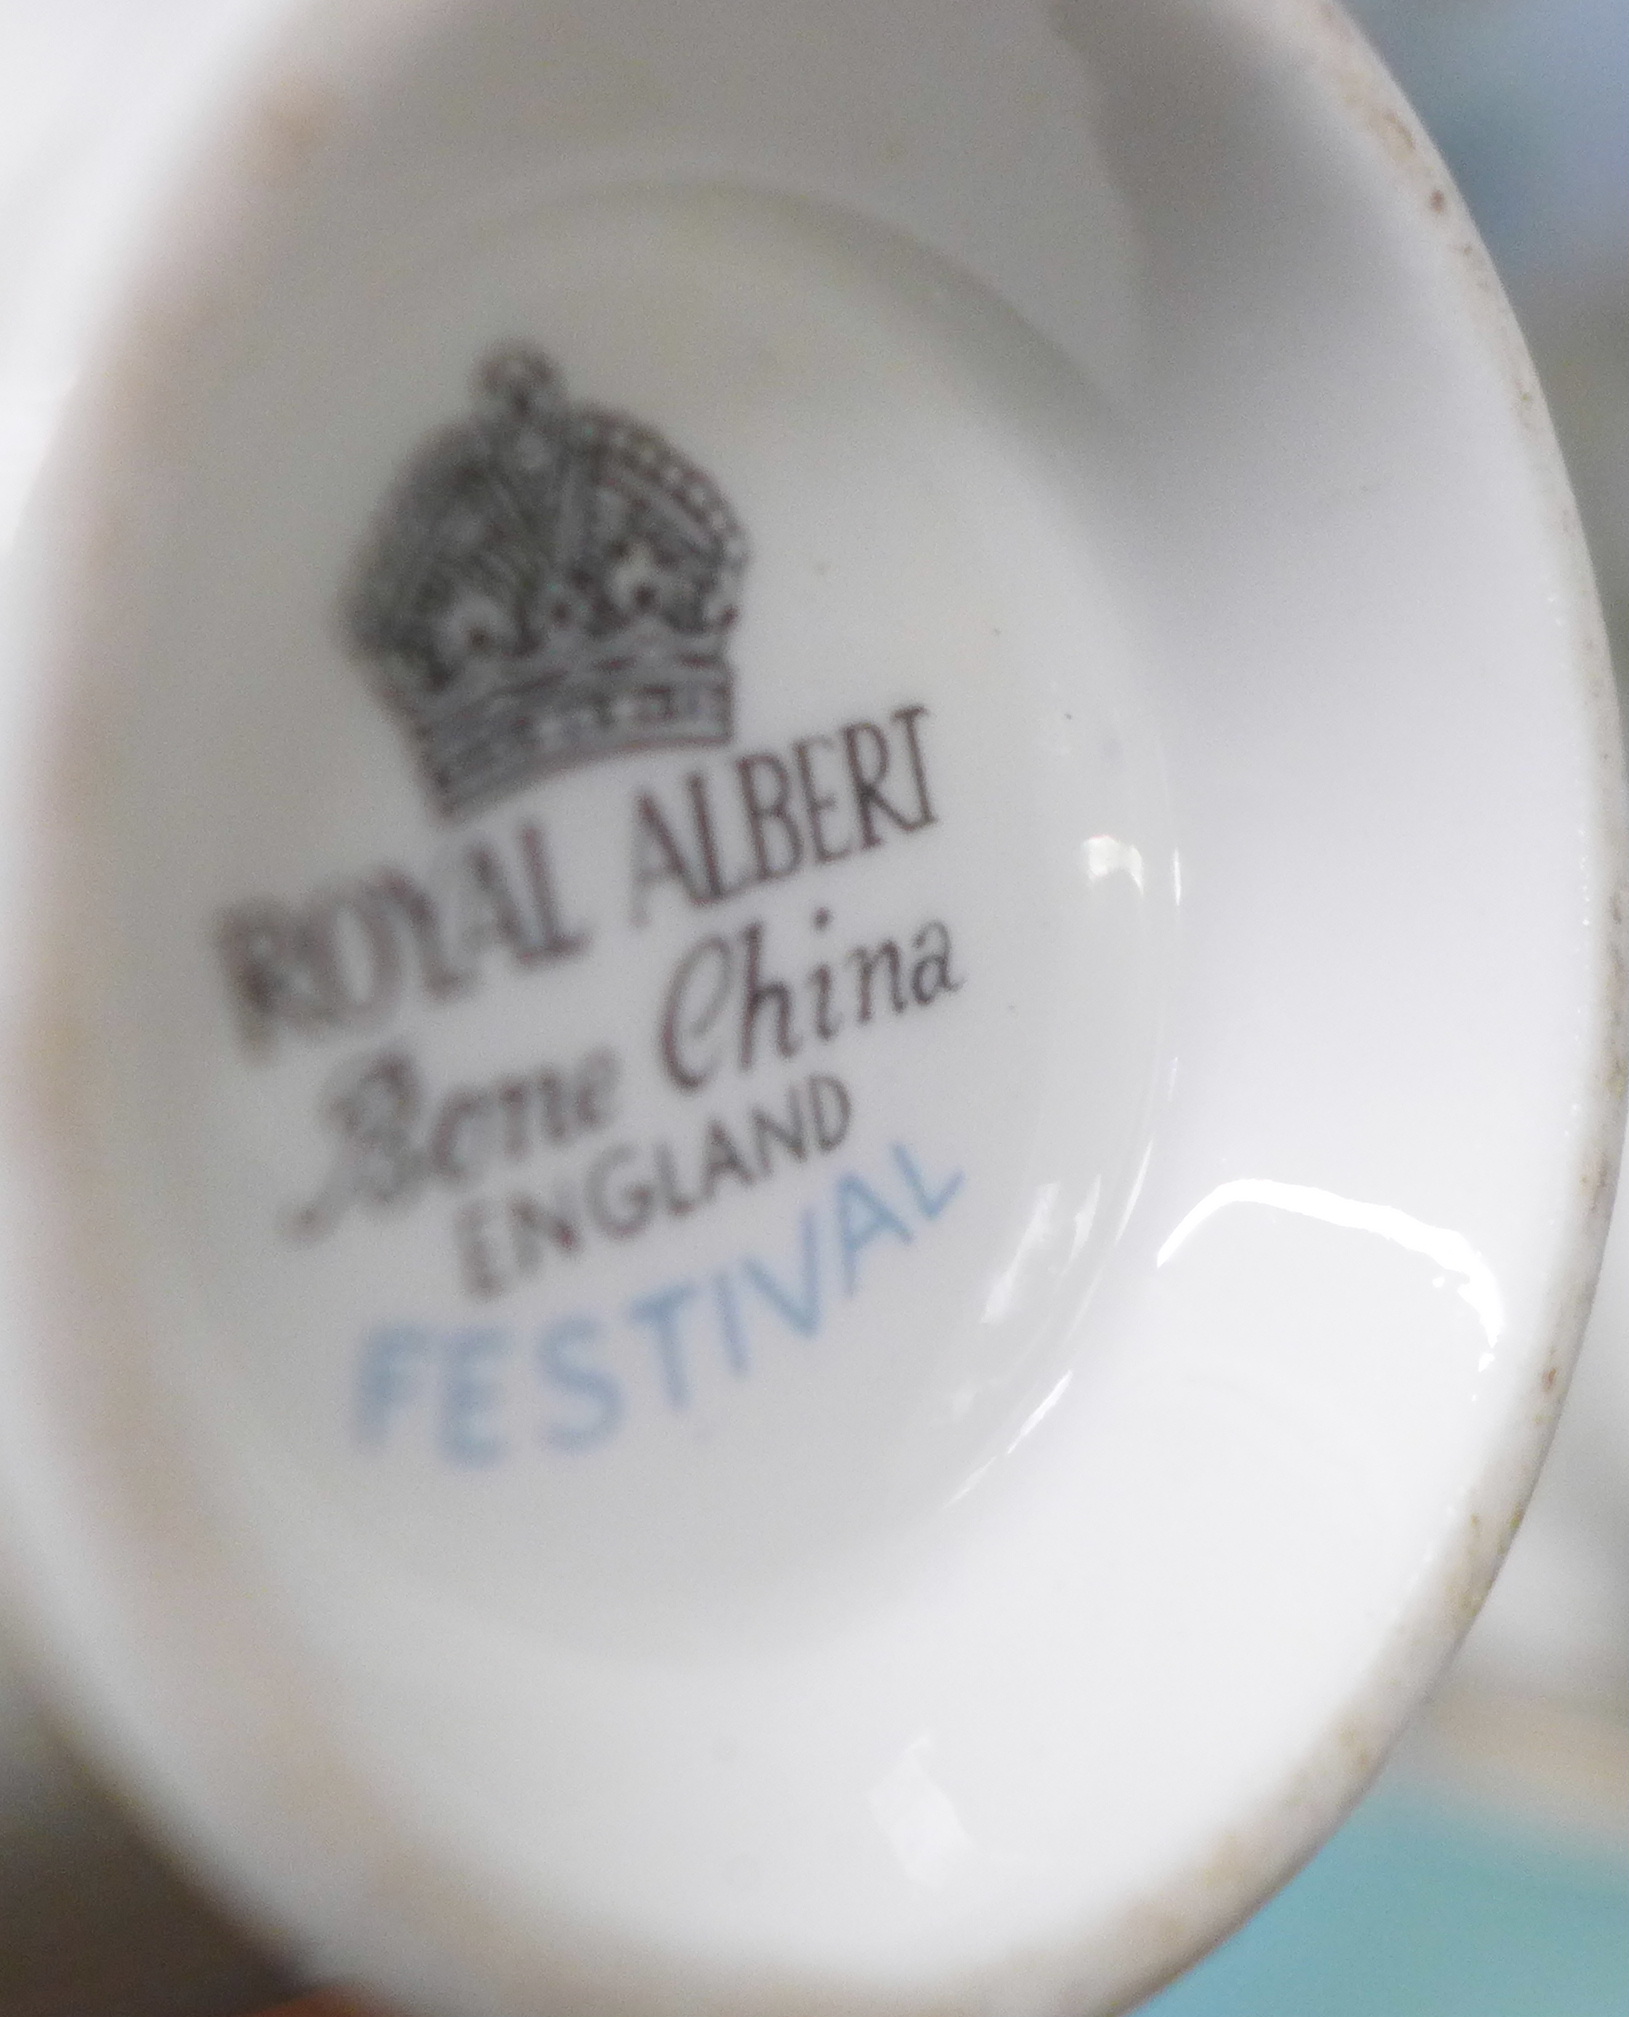 A Royal Albert Festival tea set - Image 2 of 2